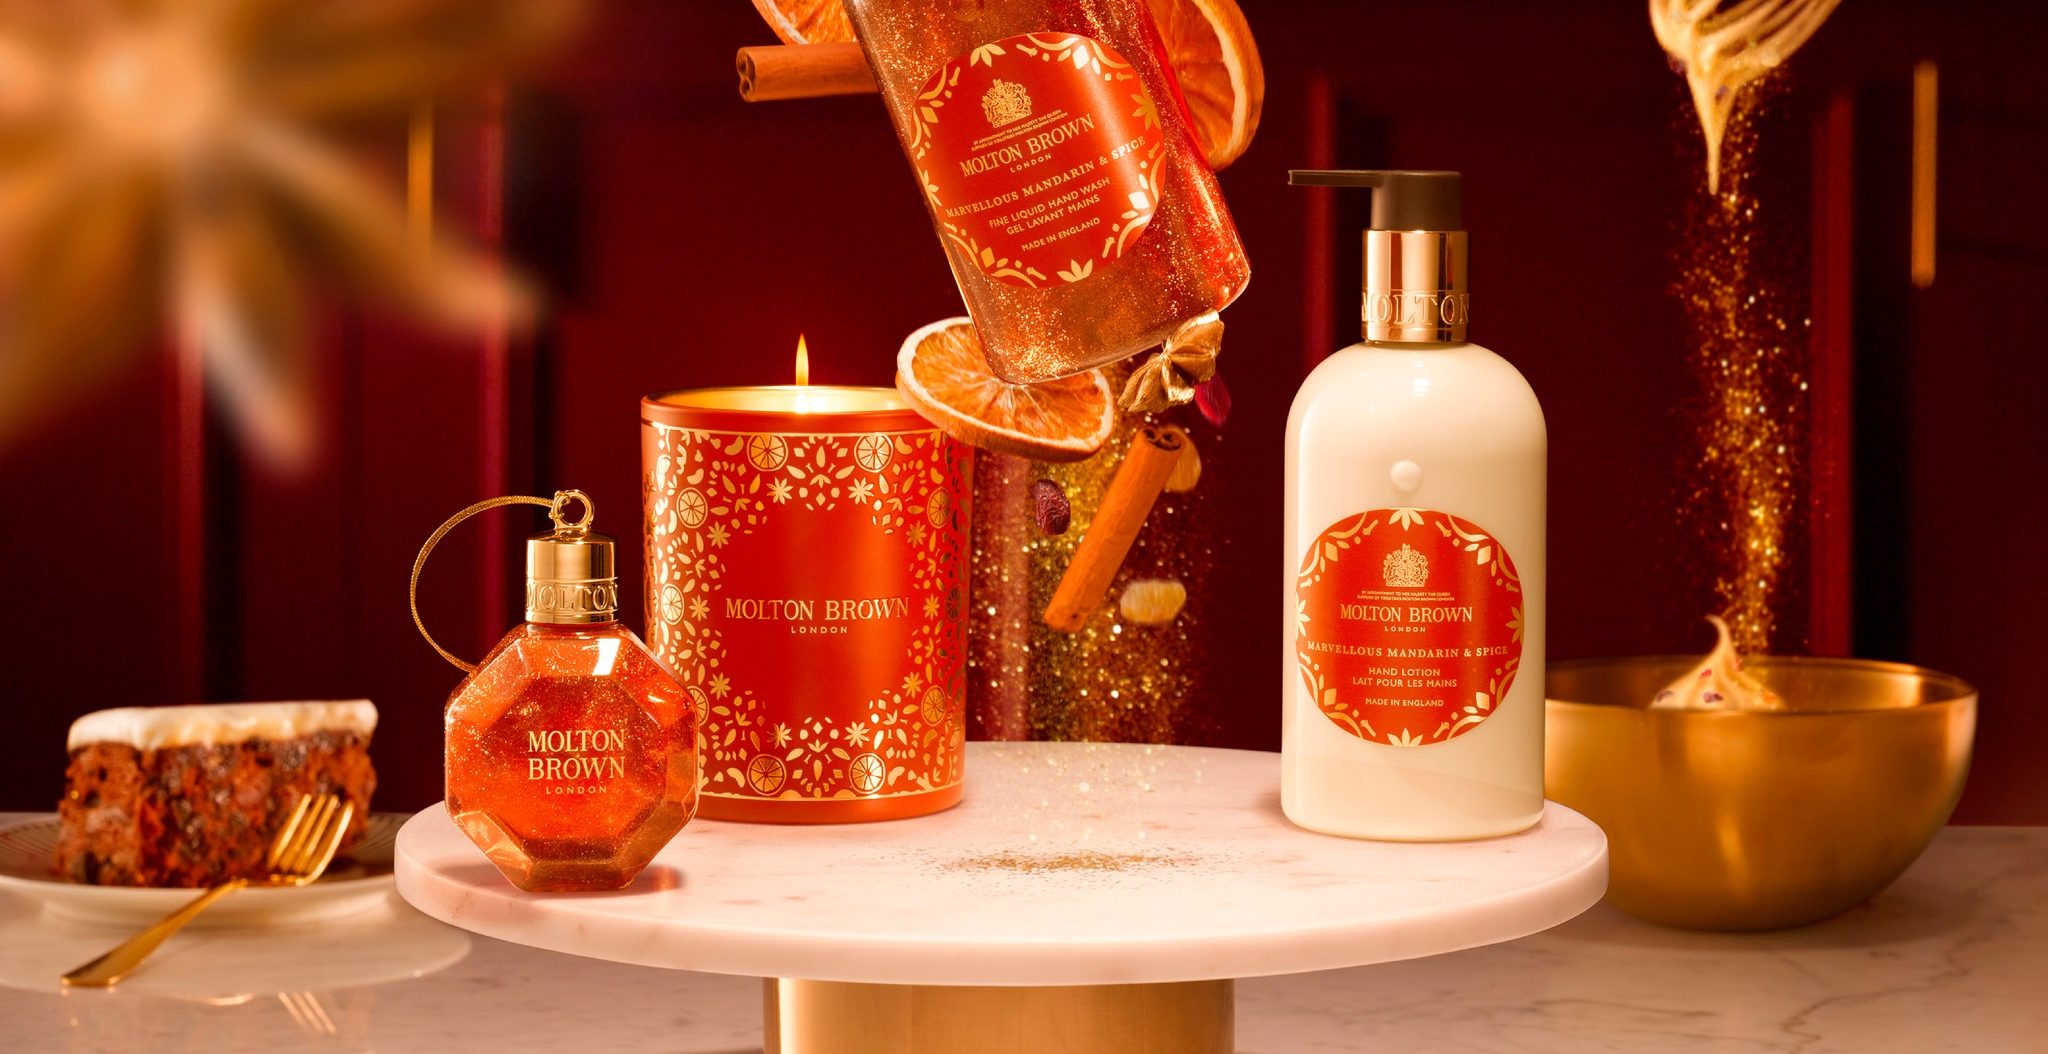 Τα φετινά Χριστούγεννα έχουν “Marvelous Mandarin & Spice” μυρώδια